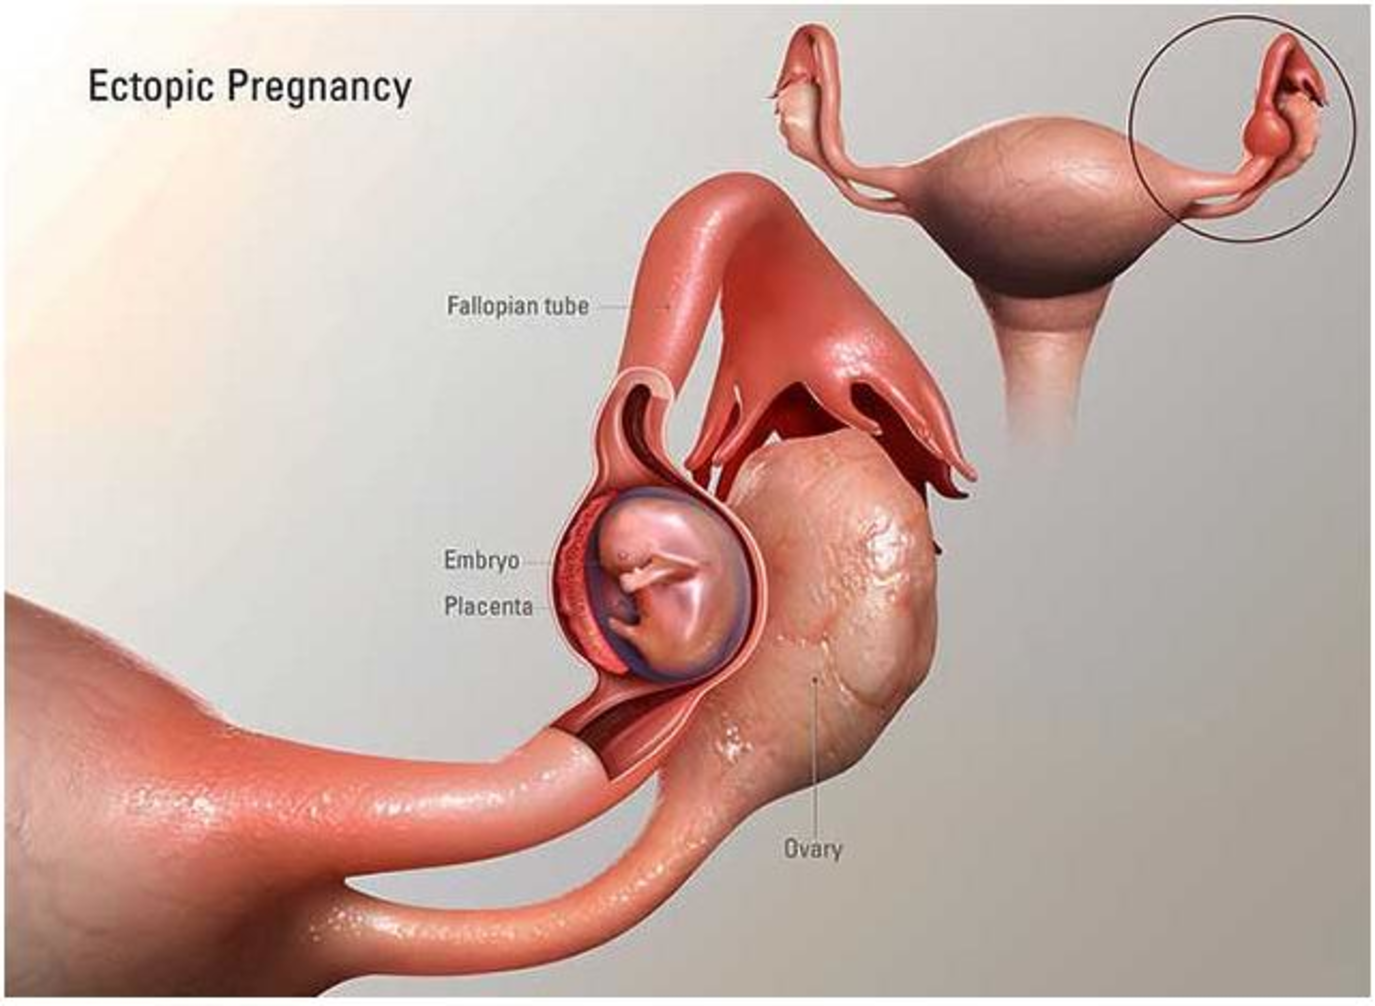 الحمل خارج الرحم أسبابه وطرق الوقاية منه؟ | مجلة سيدتي